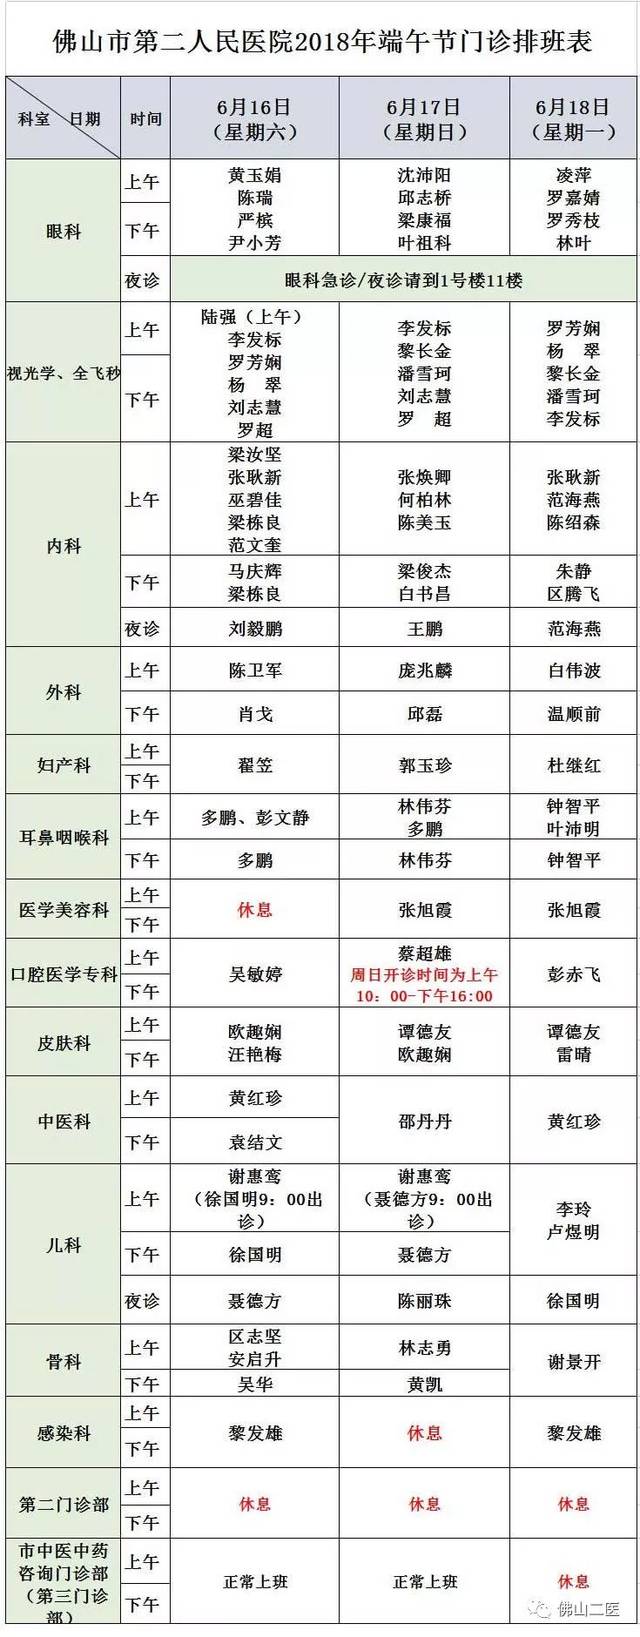 包含北京四惠中医医院挂号号贩子联系方式第一时间安排【10分钟出号】的词条